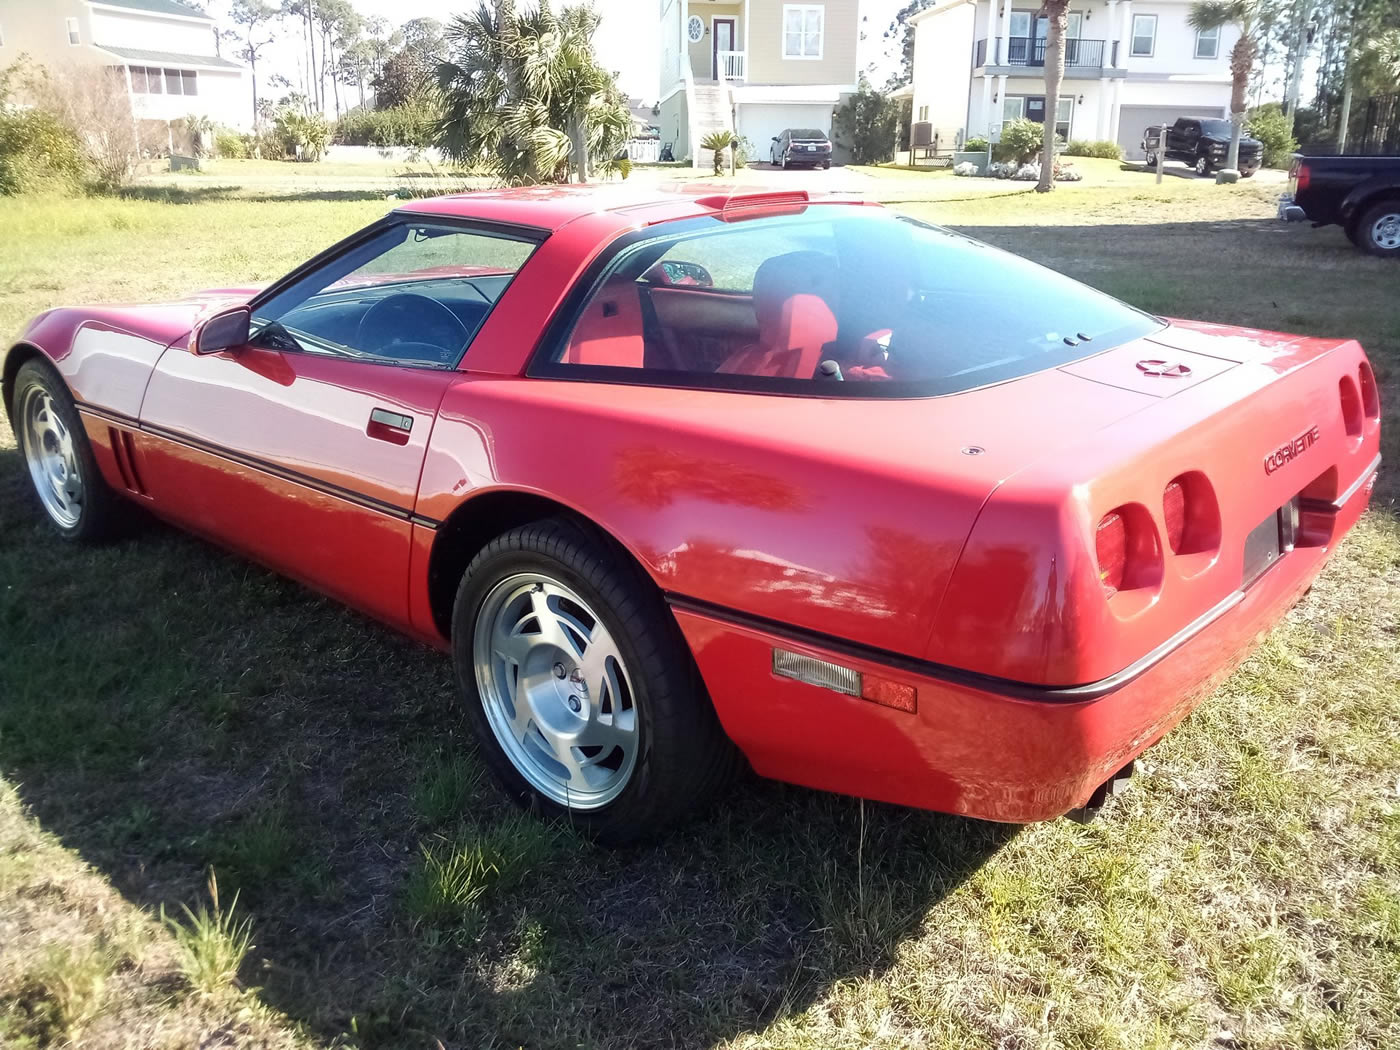 1990 Corvette ZR-1 in Bright Red on Red Interior